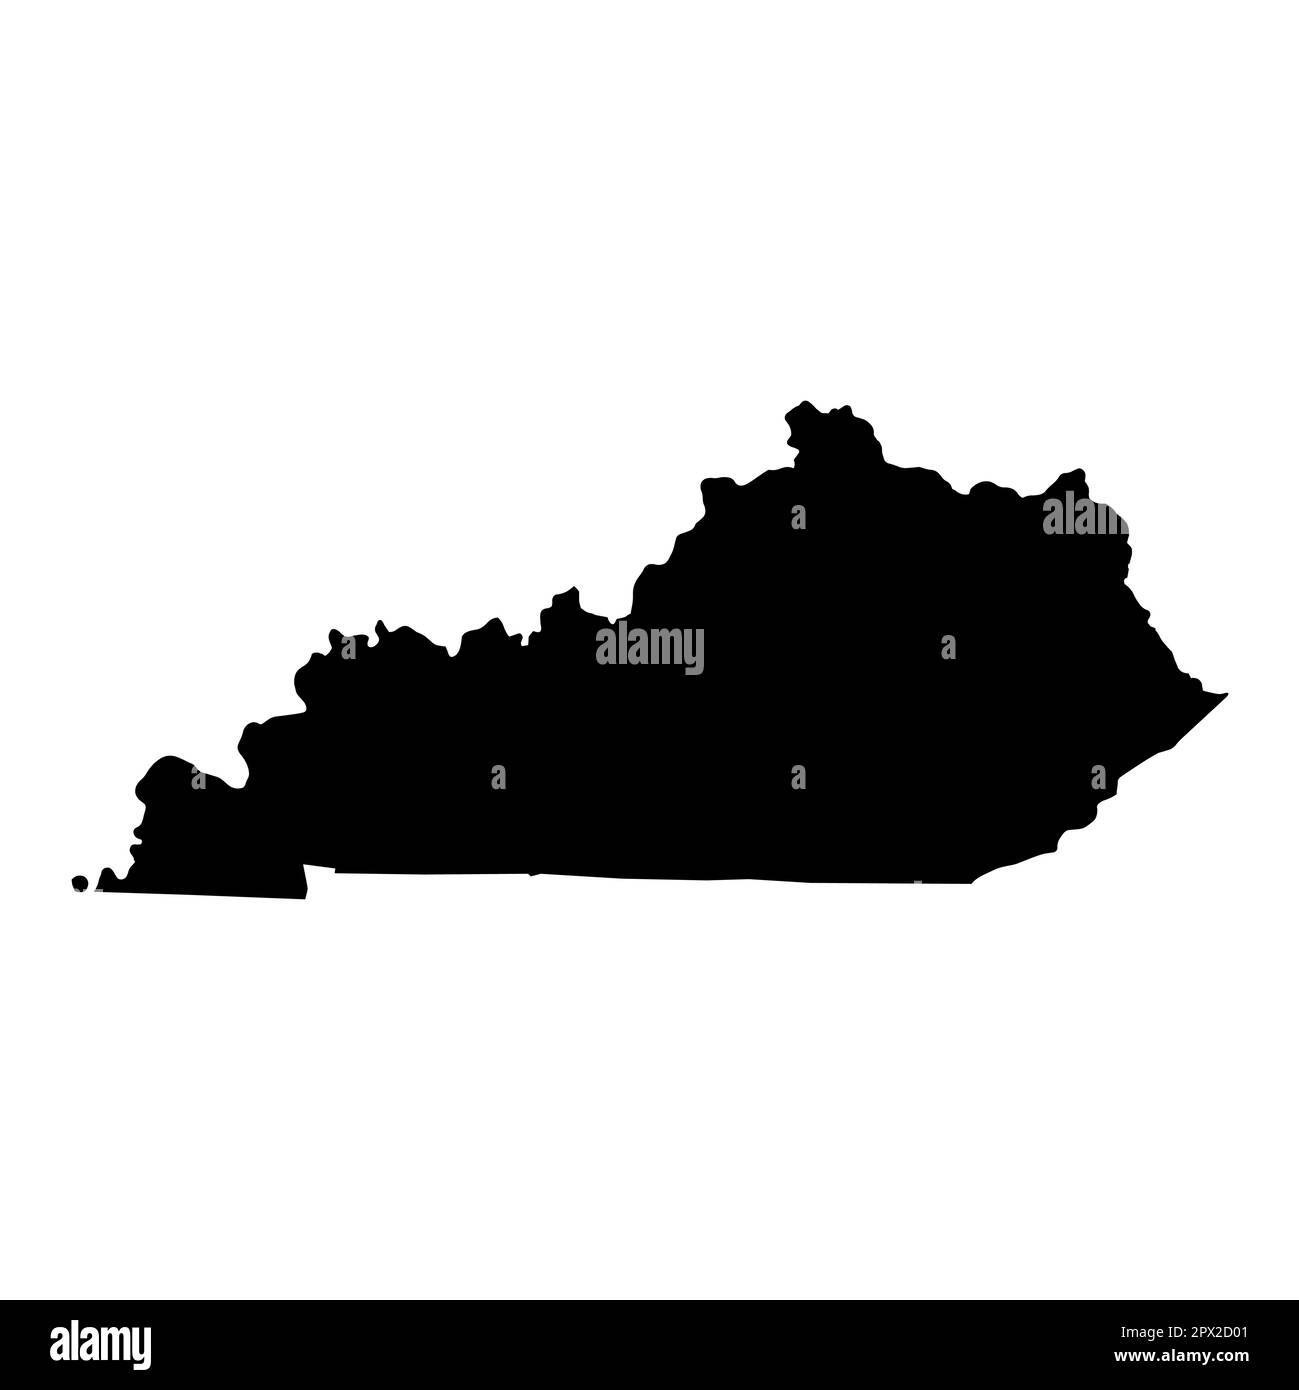 Kentucky Kartenform, vereinigte Staaten von amerika. Symbolvektordarstellung für flache Konzepte. Stock Vektor